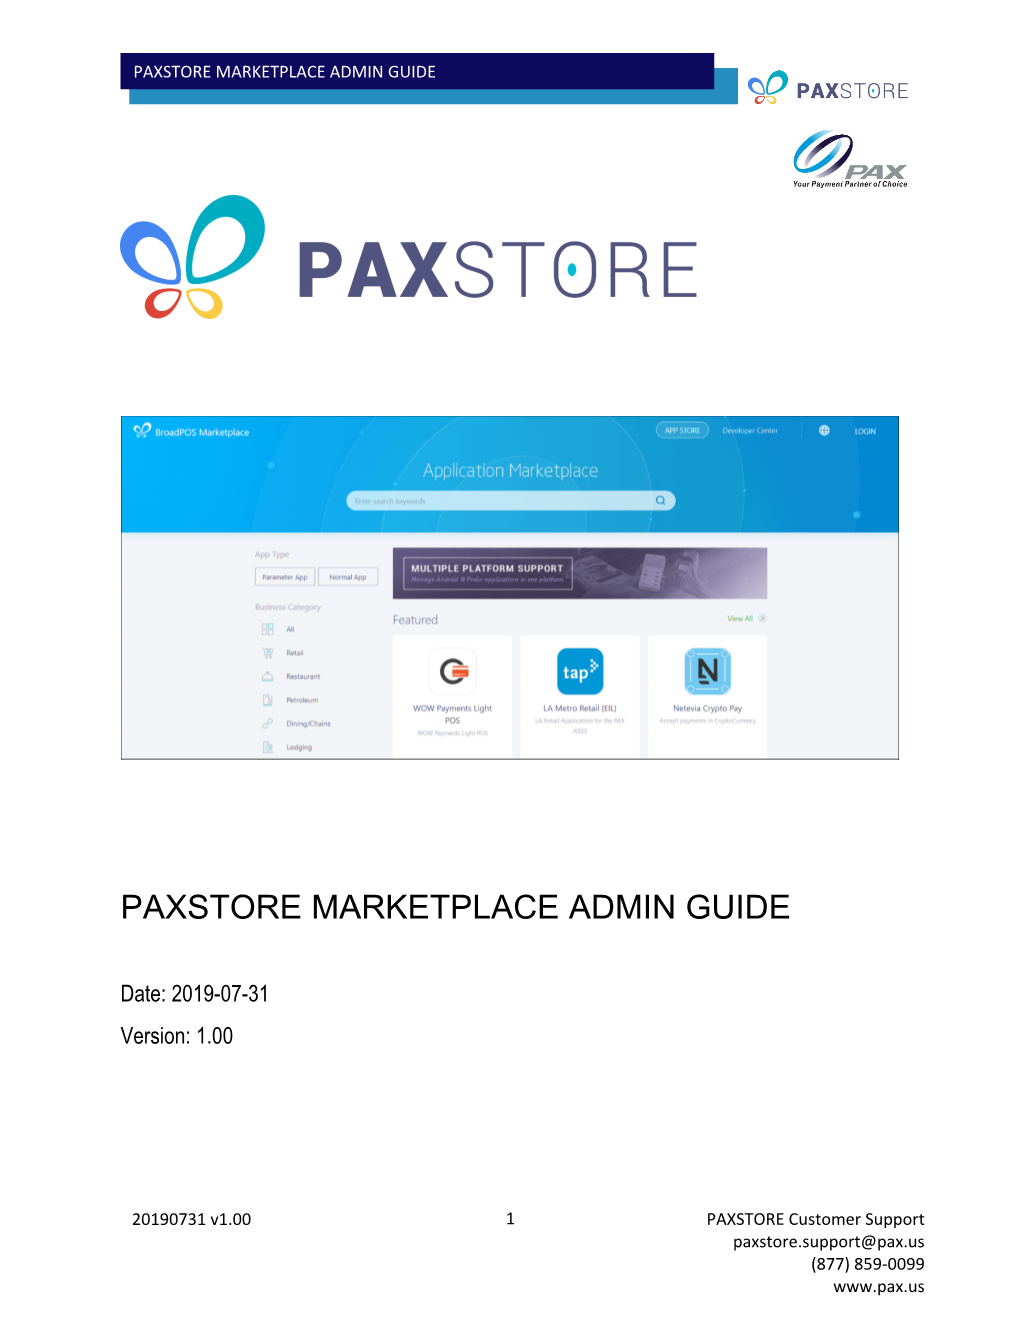 Paxstore Marketplace Admin Guide